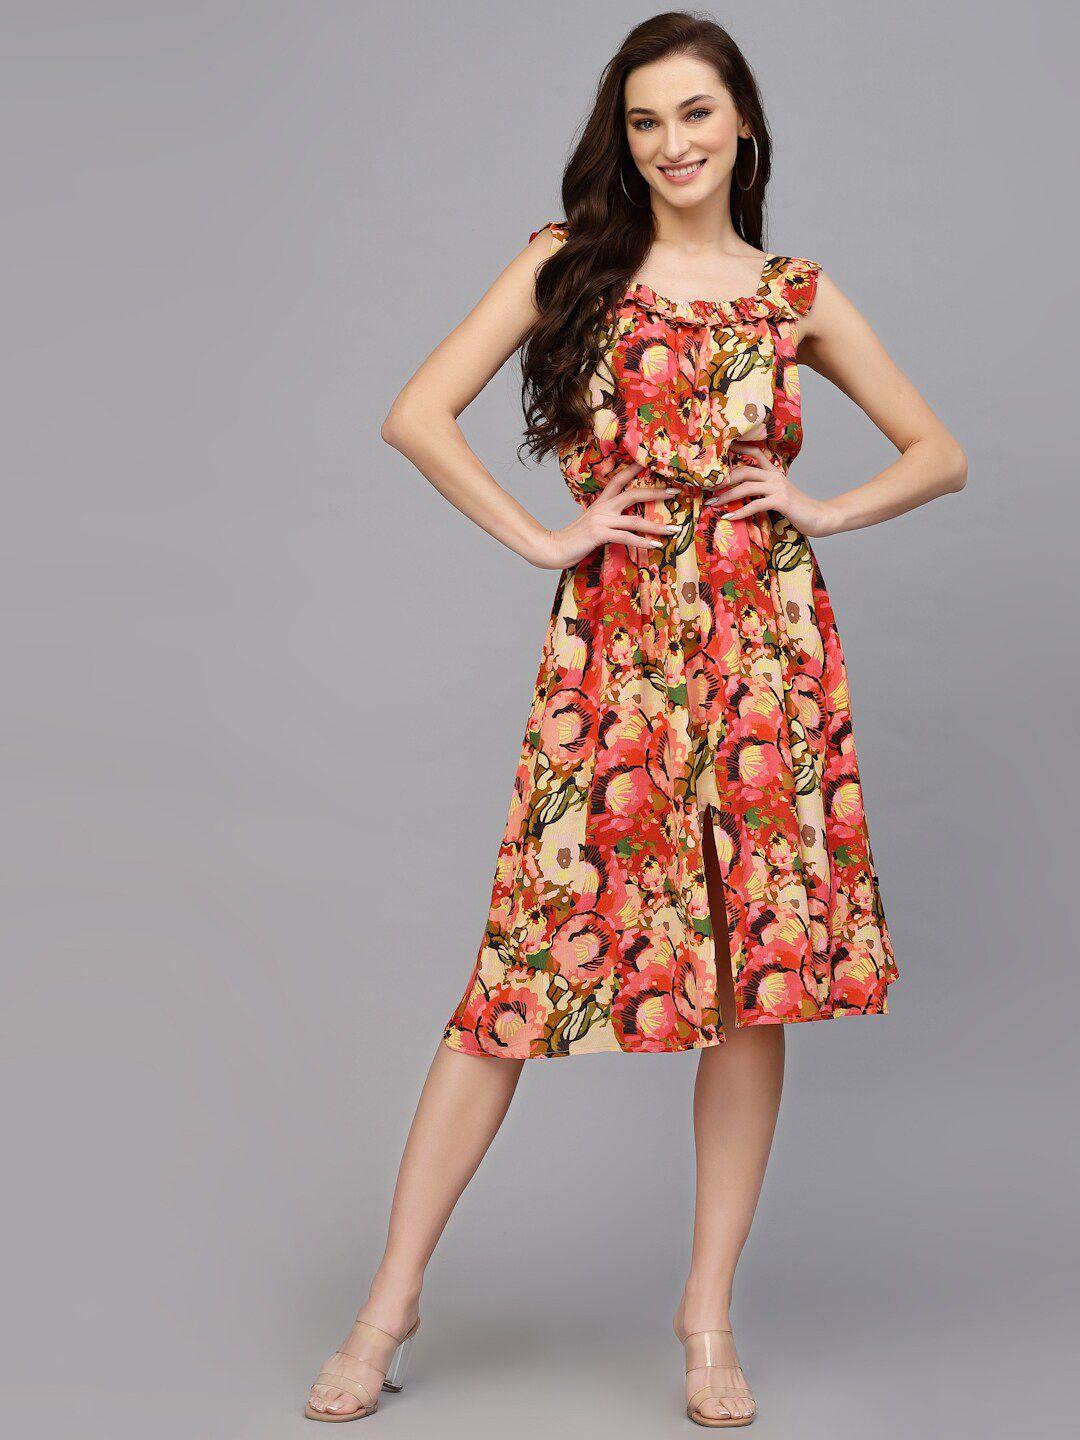 valbone floral printed shoulder straps georgette dress